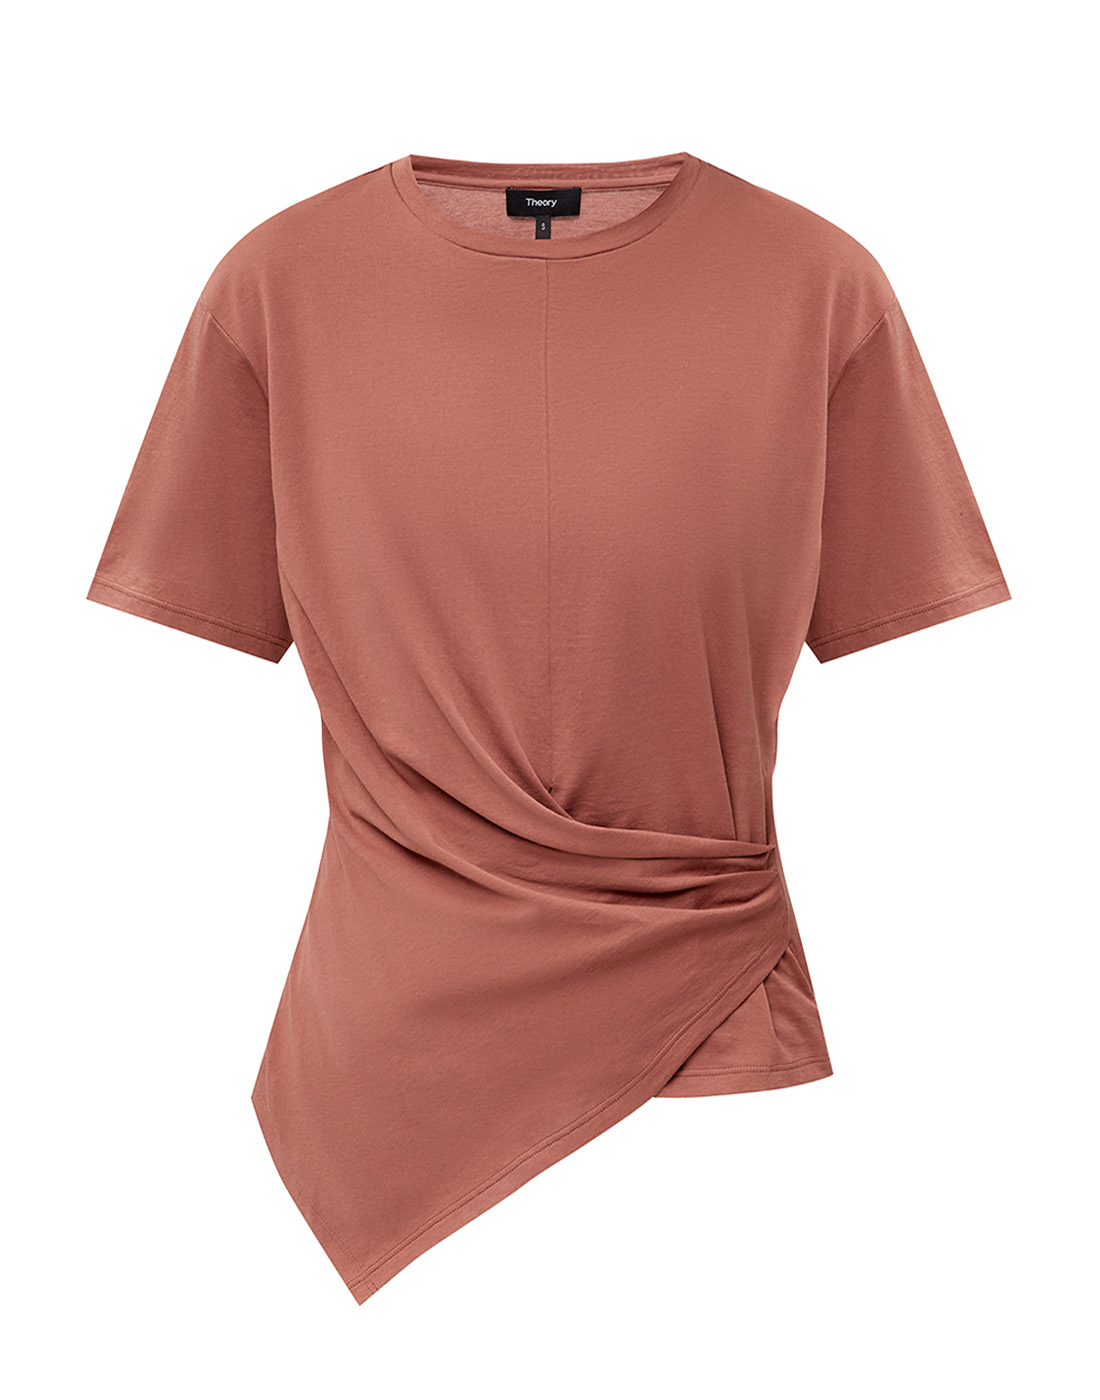 Женская терракотовая блуза Theory SL0724501-1